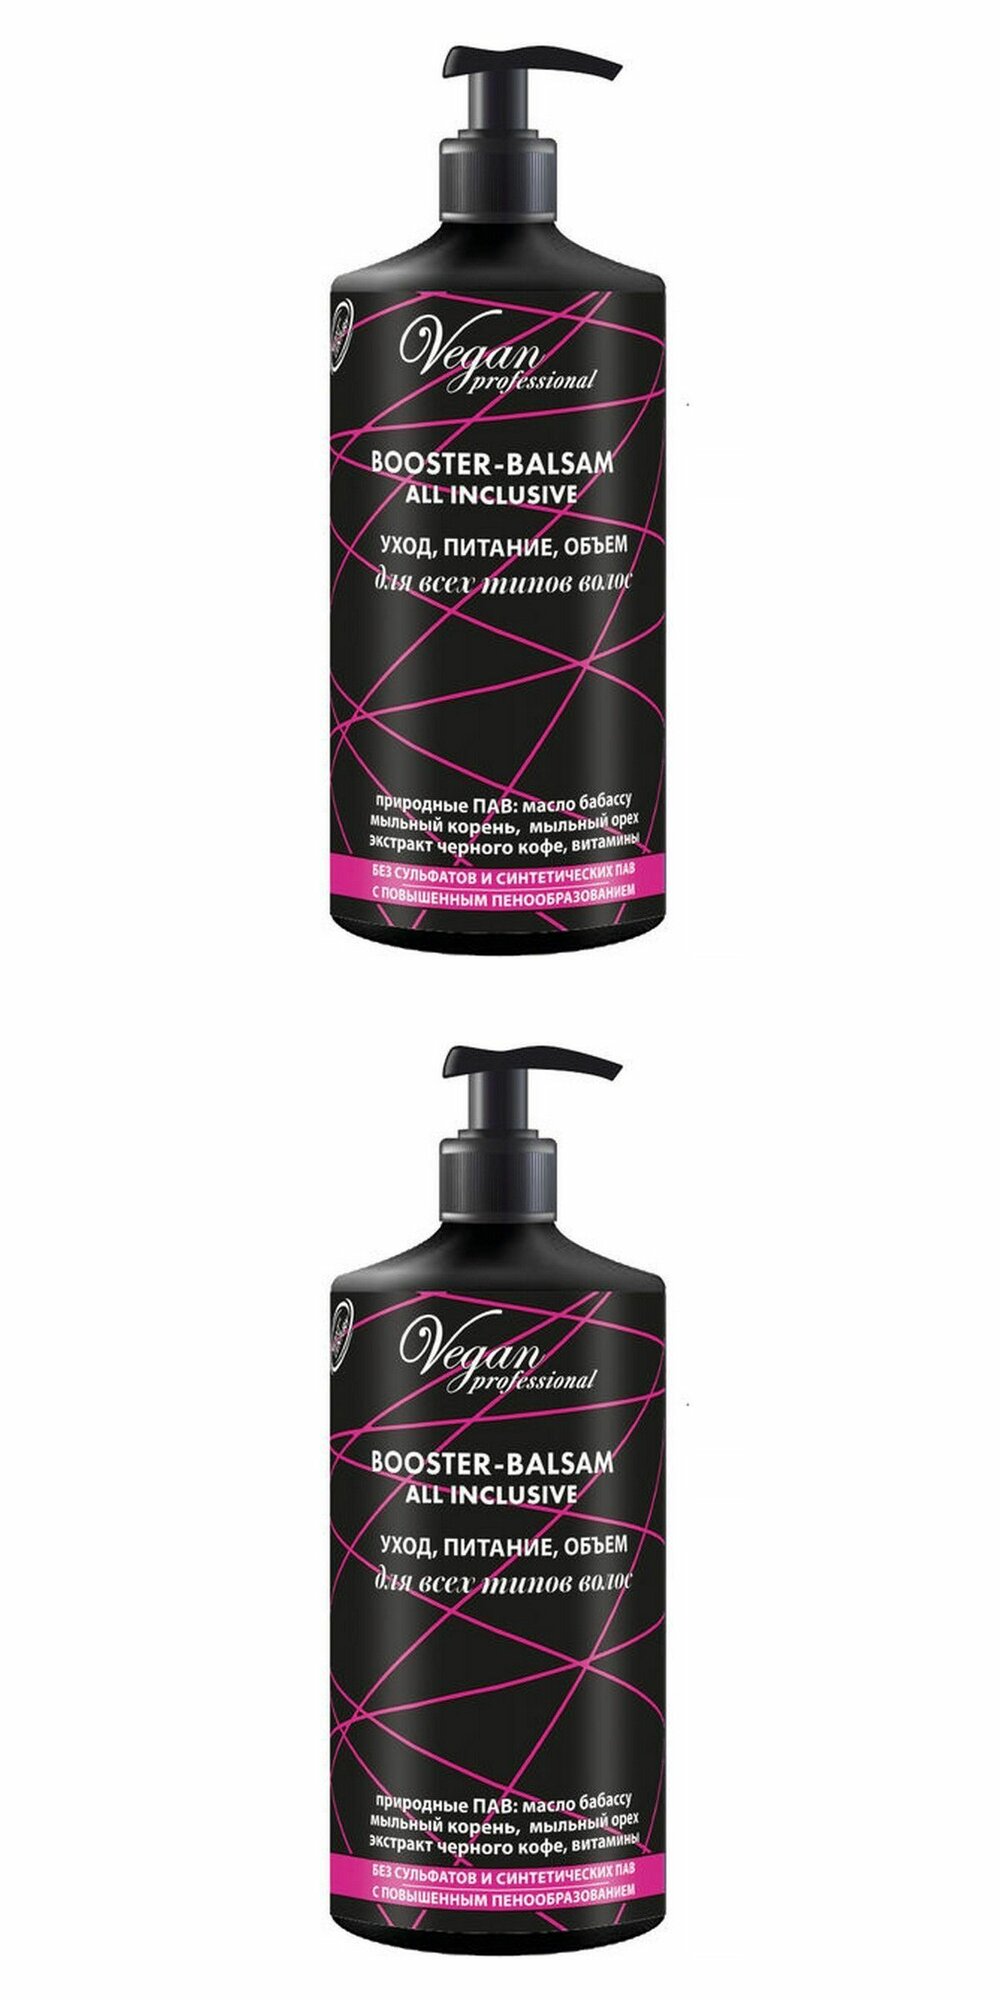 NEXXT CENTURY Бустер-бальзам для волос Vegan Professional Booster-Balsam All Inclusive, для частого применения: уход, питание, объем, 1000 мл, 2 шт.